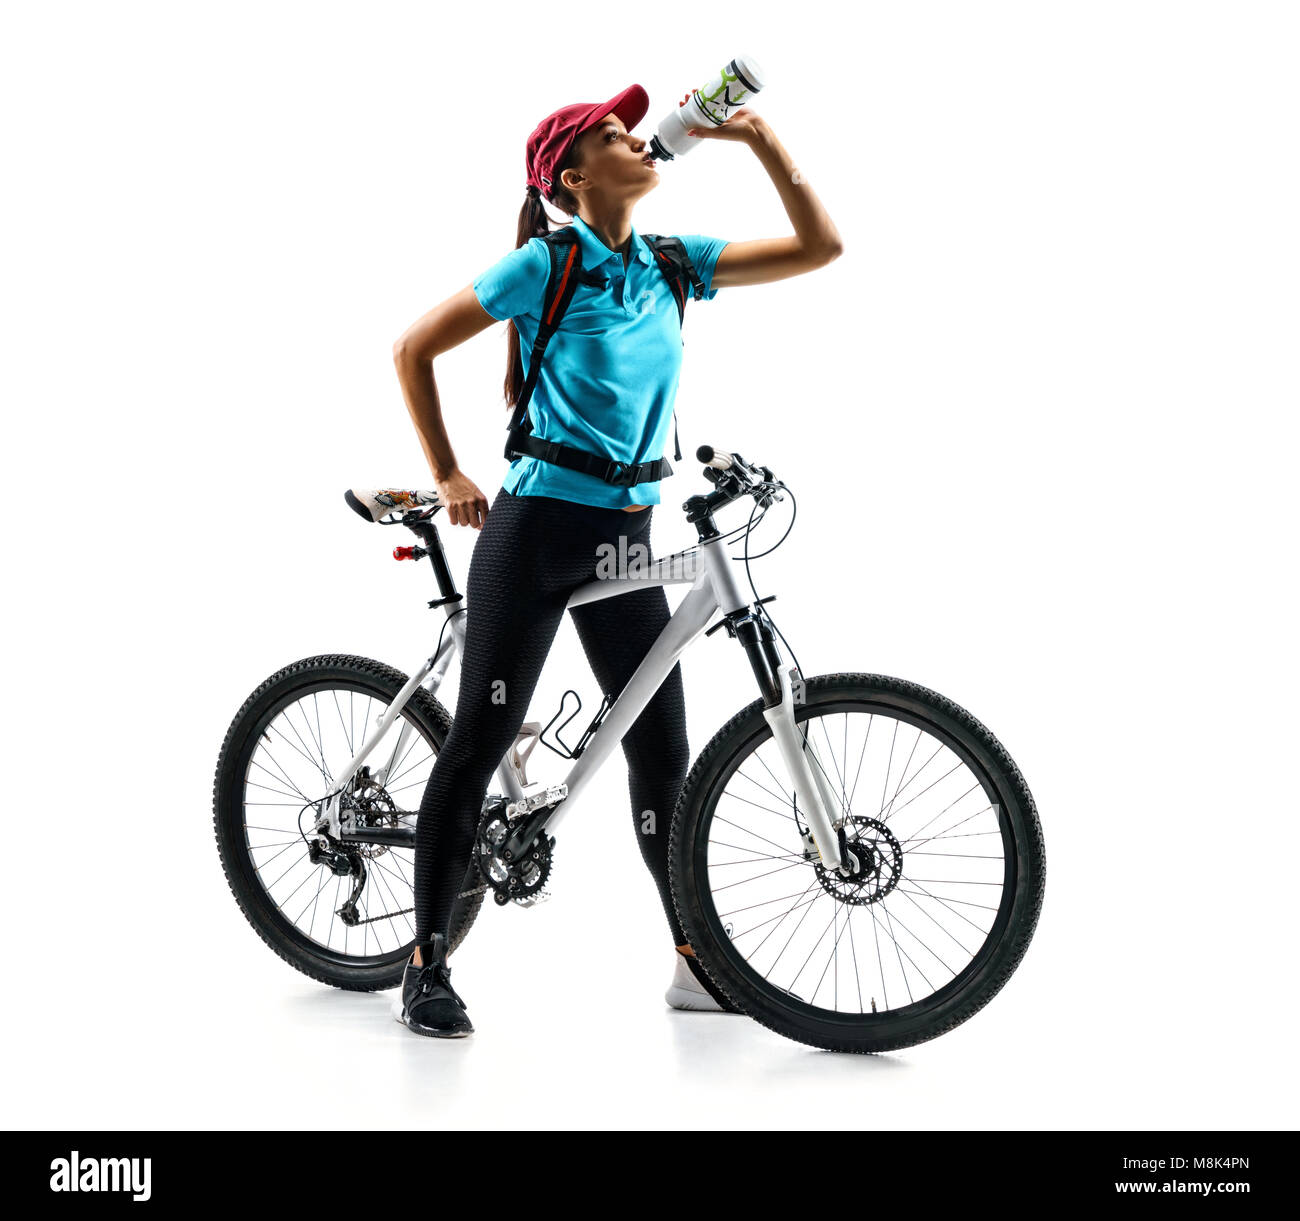 Cycliste de tee-shirt bleu avec de l'eau potable un vélo en silhouette sur fond blanc. Sport et mode de vie sain Banque D'Images